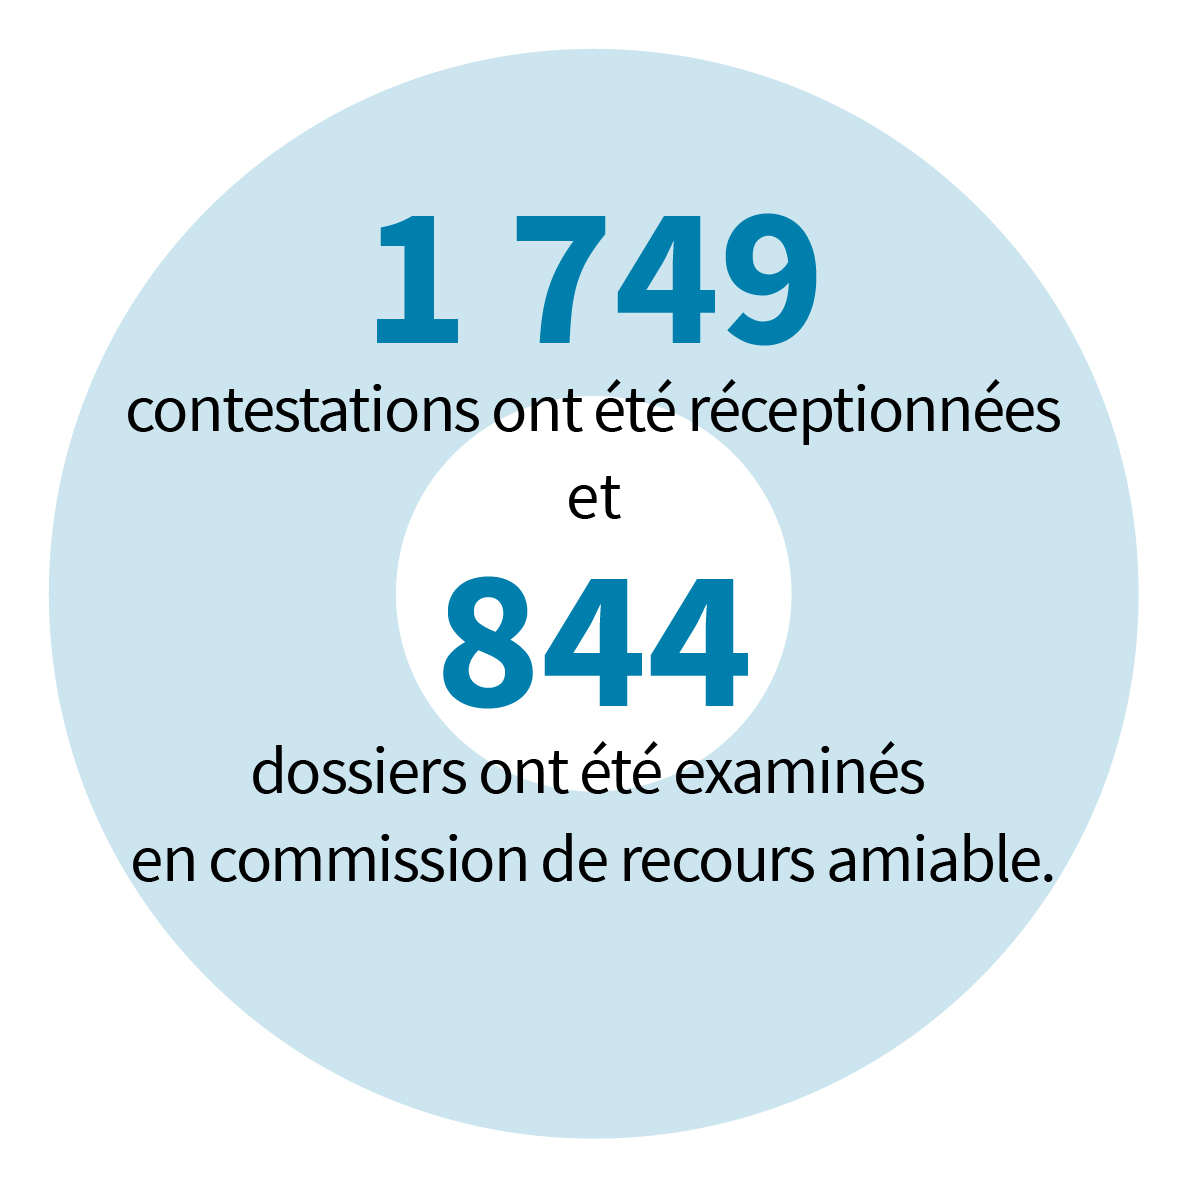 1 749 contestations ont été réceptionnées et 844 dossiers ont été examinés en commission de recours amiable.